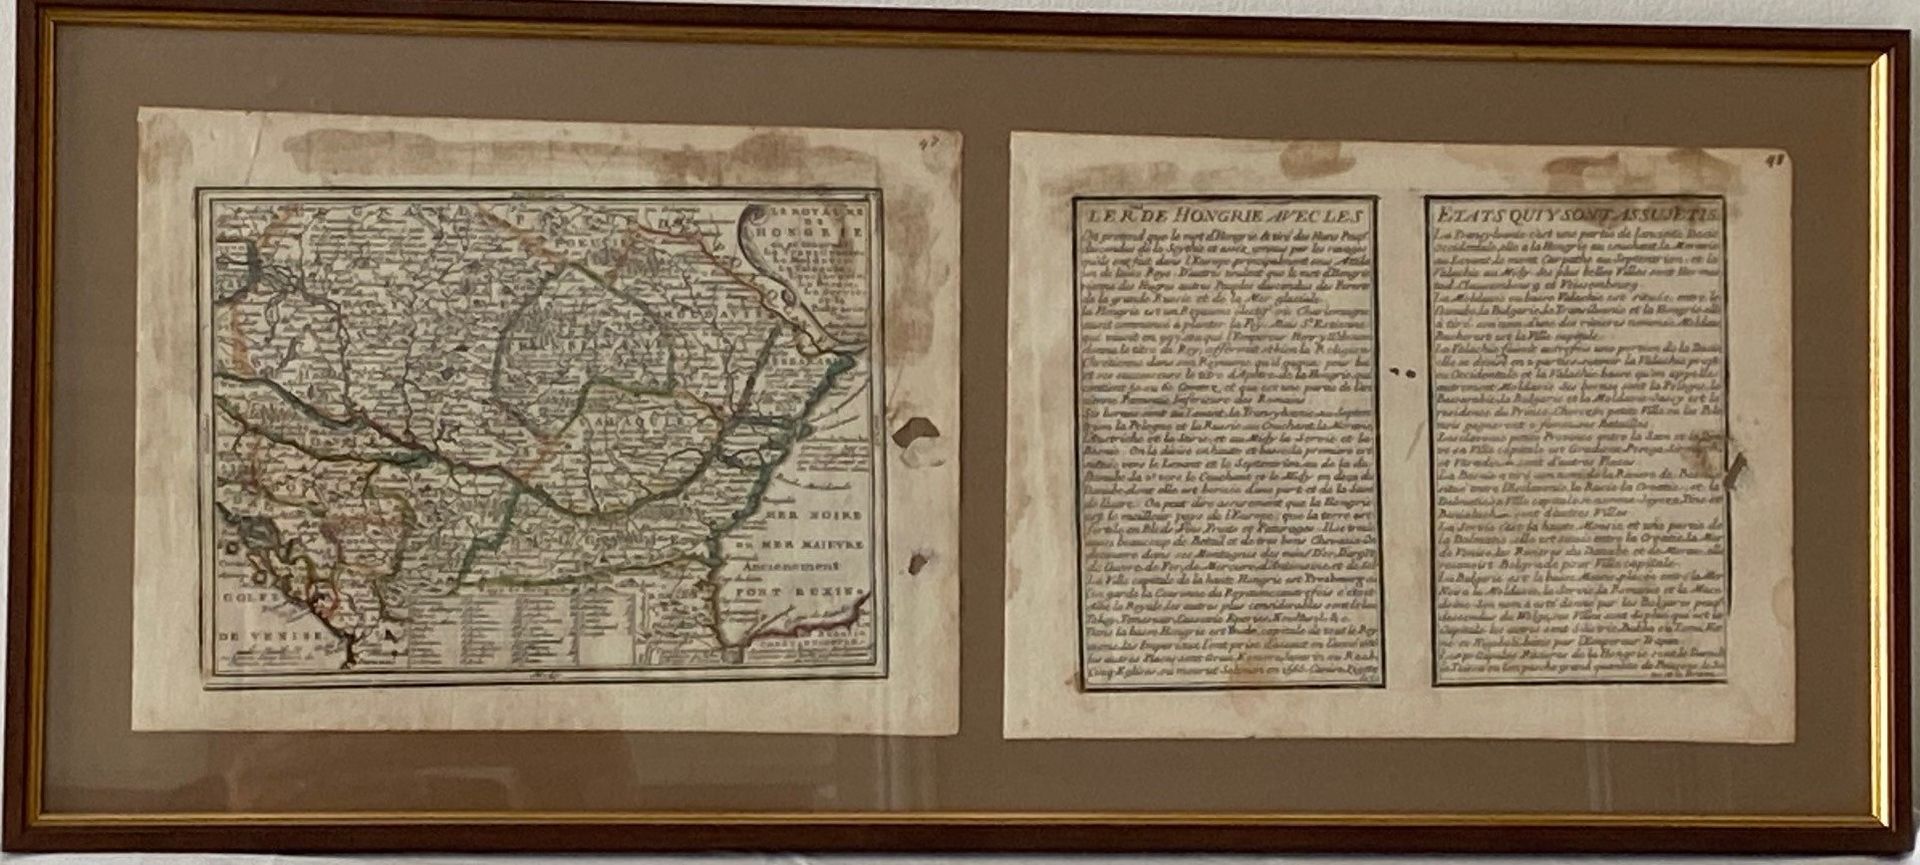 Null 匈牙利王国地图及所属各州地图

一个框架中的两页

20 x 26厘米。每页(意外)